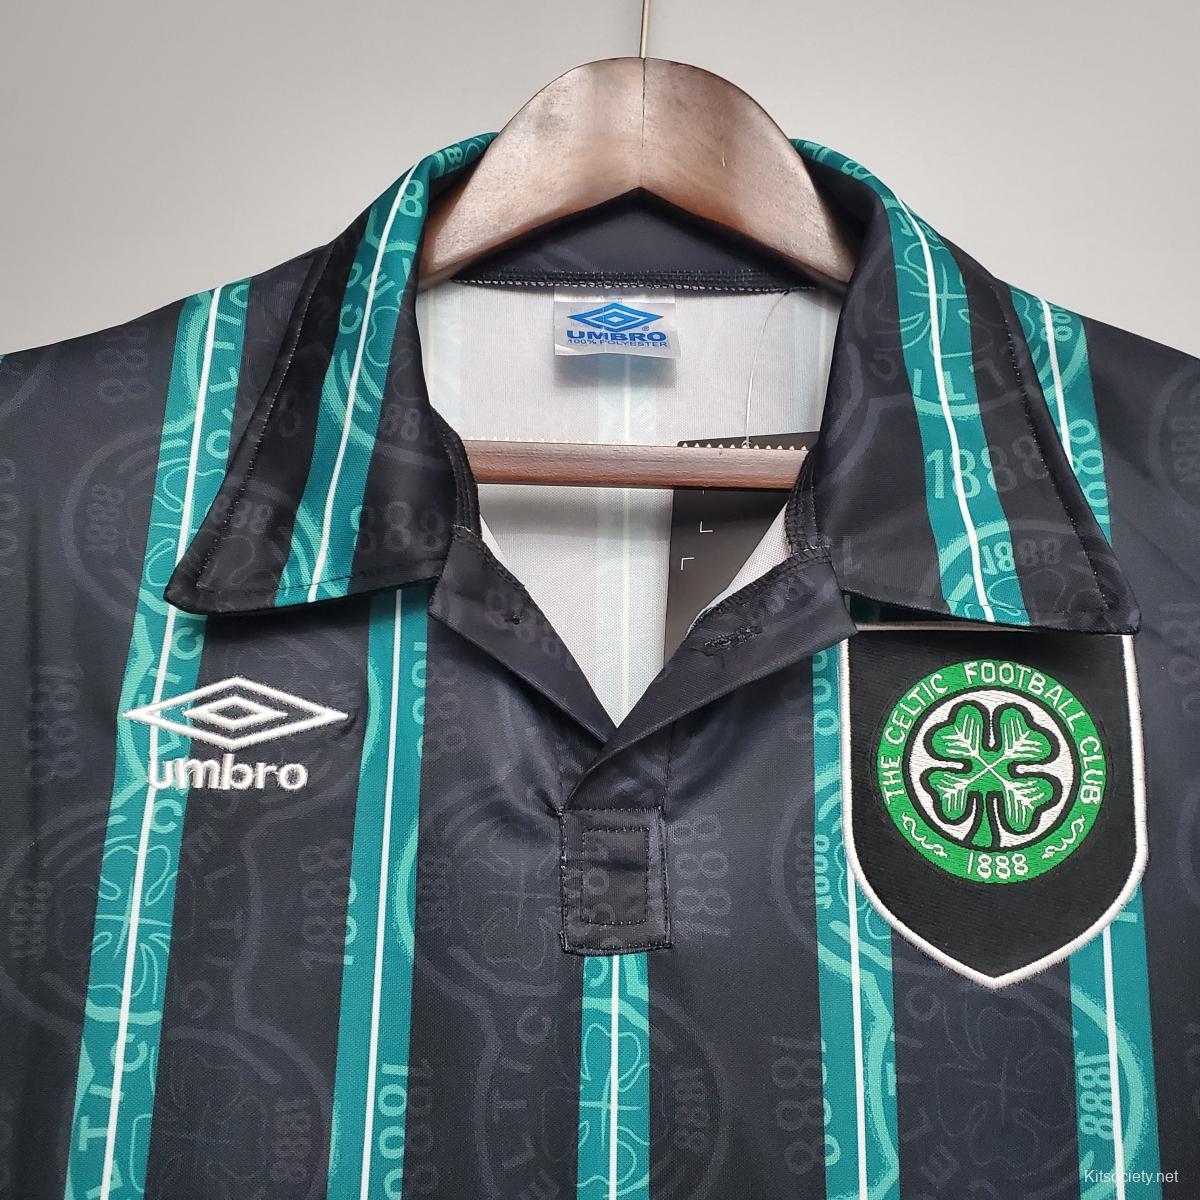 Celtic 1998/99 Home Jersey – Retros League